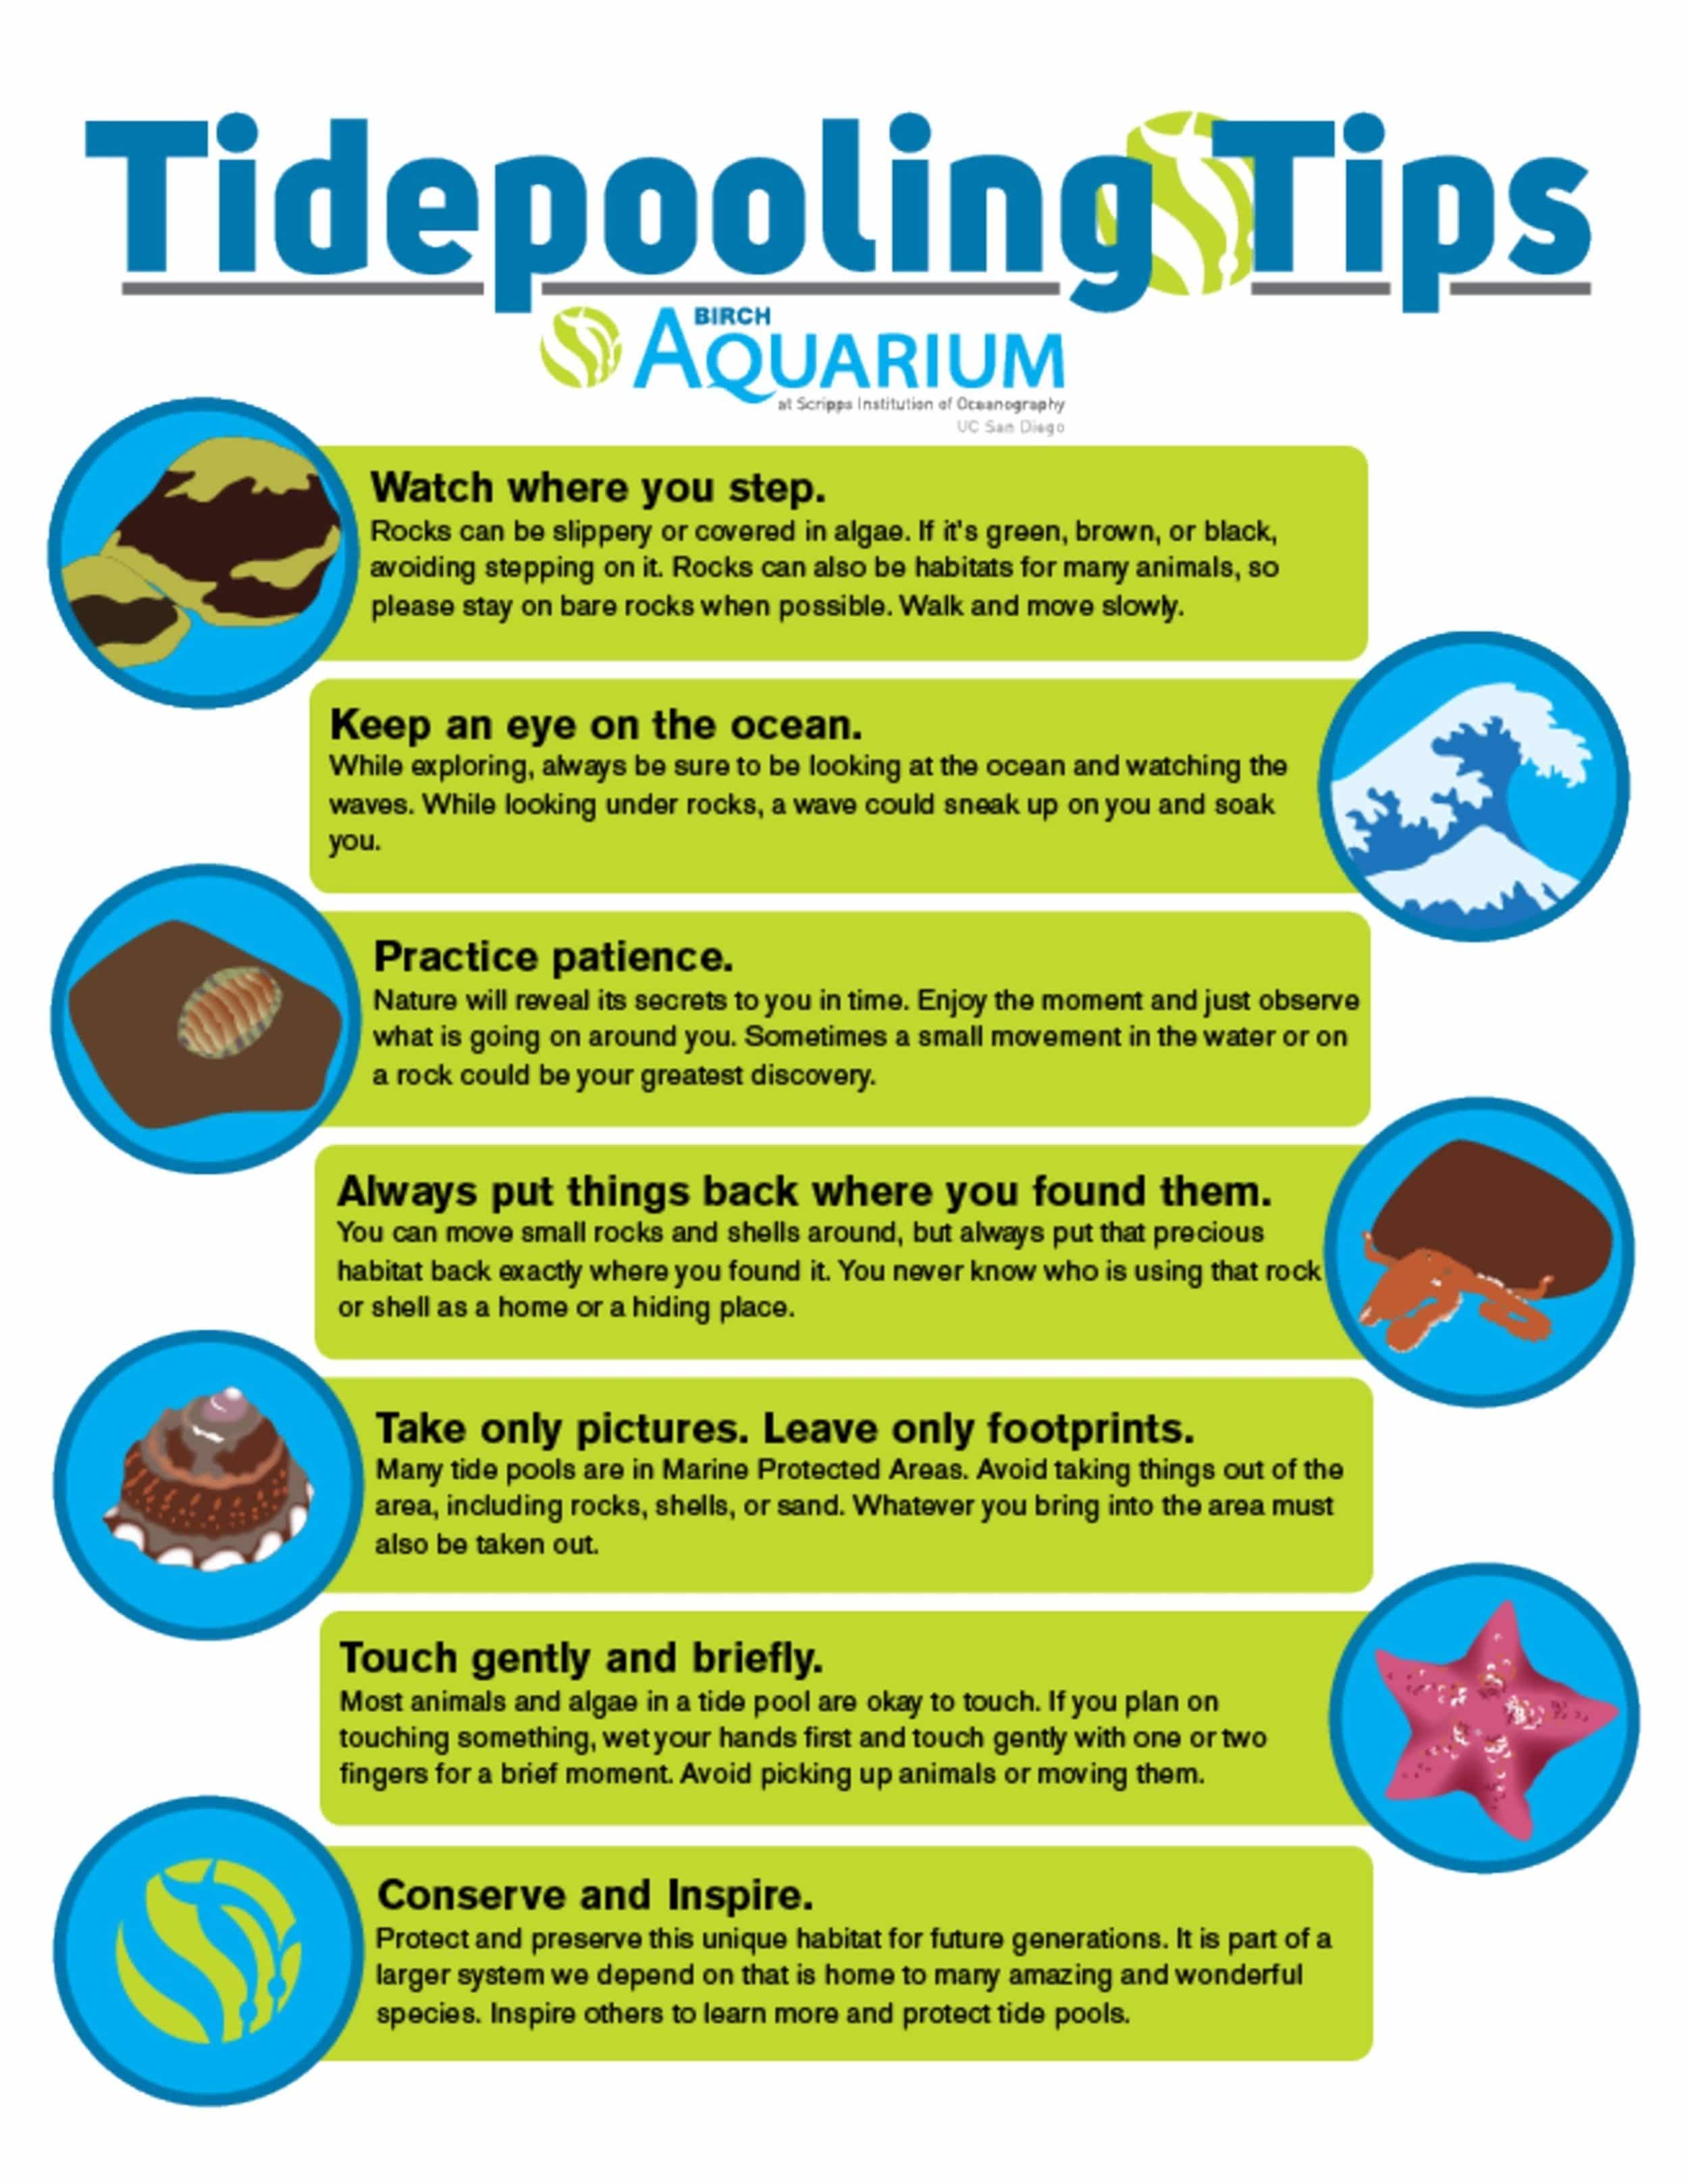 birch-aquarium-tide-pool-tips